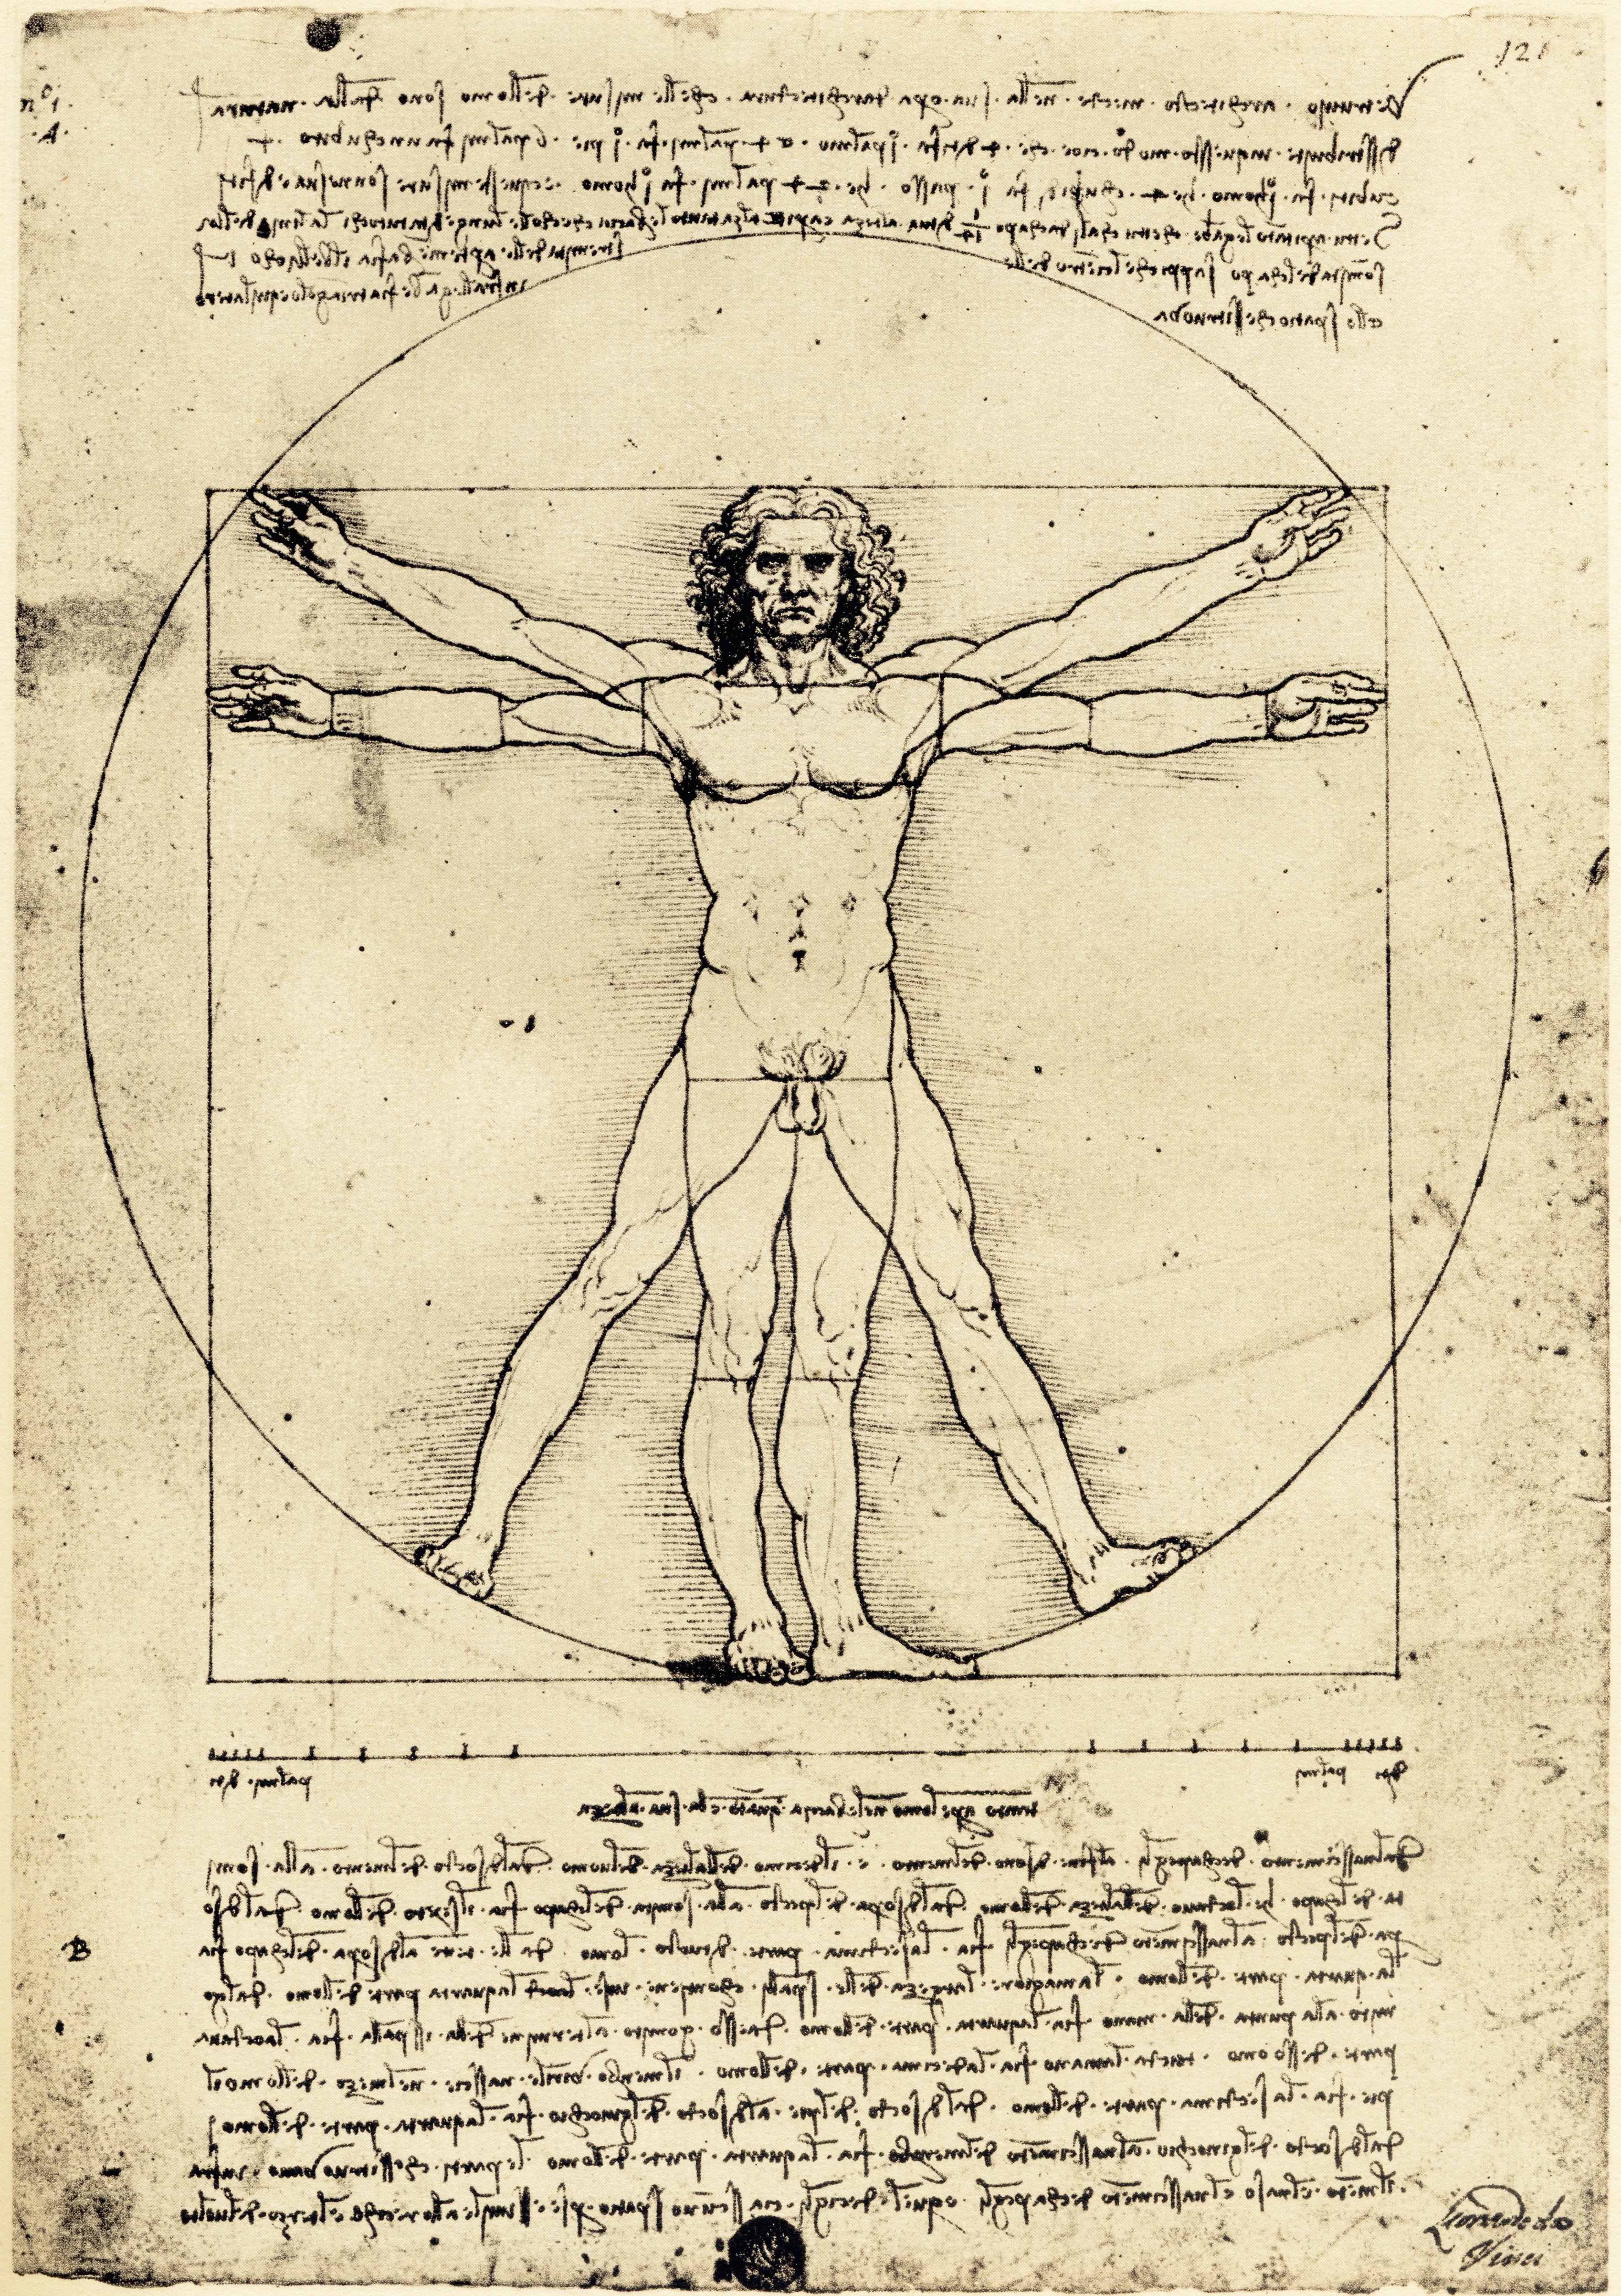 El hombre de Vitruvio de Leonardo da Vinci